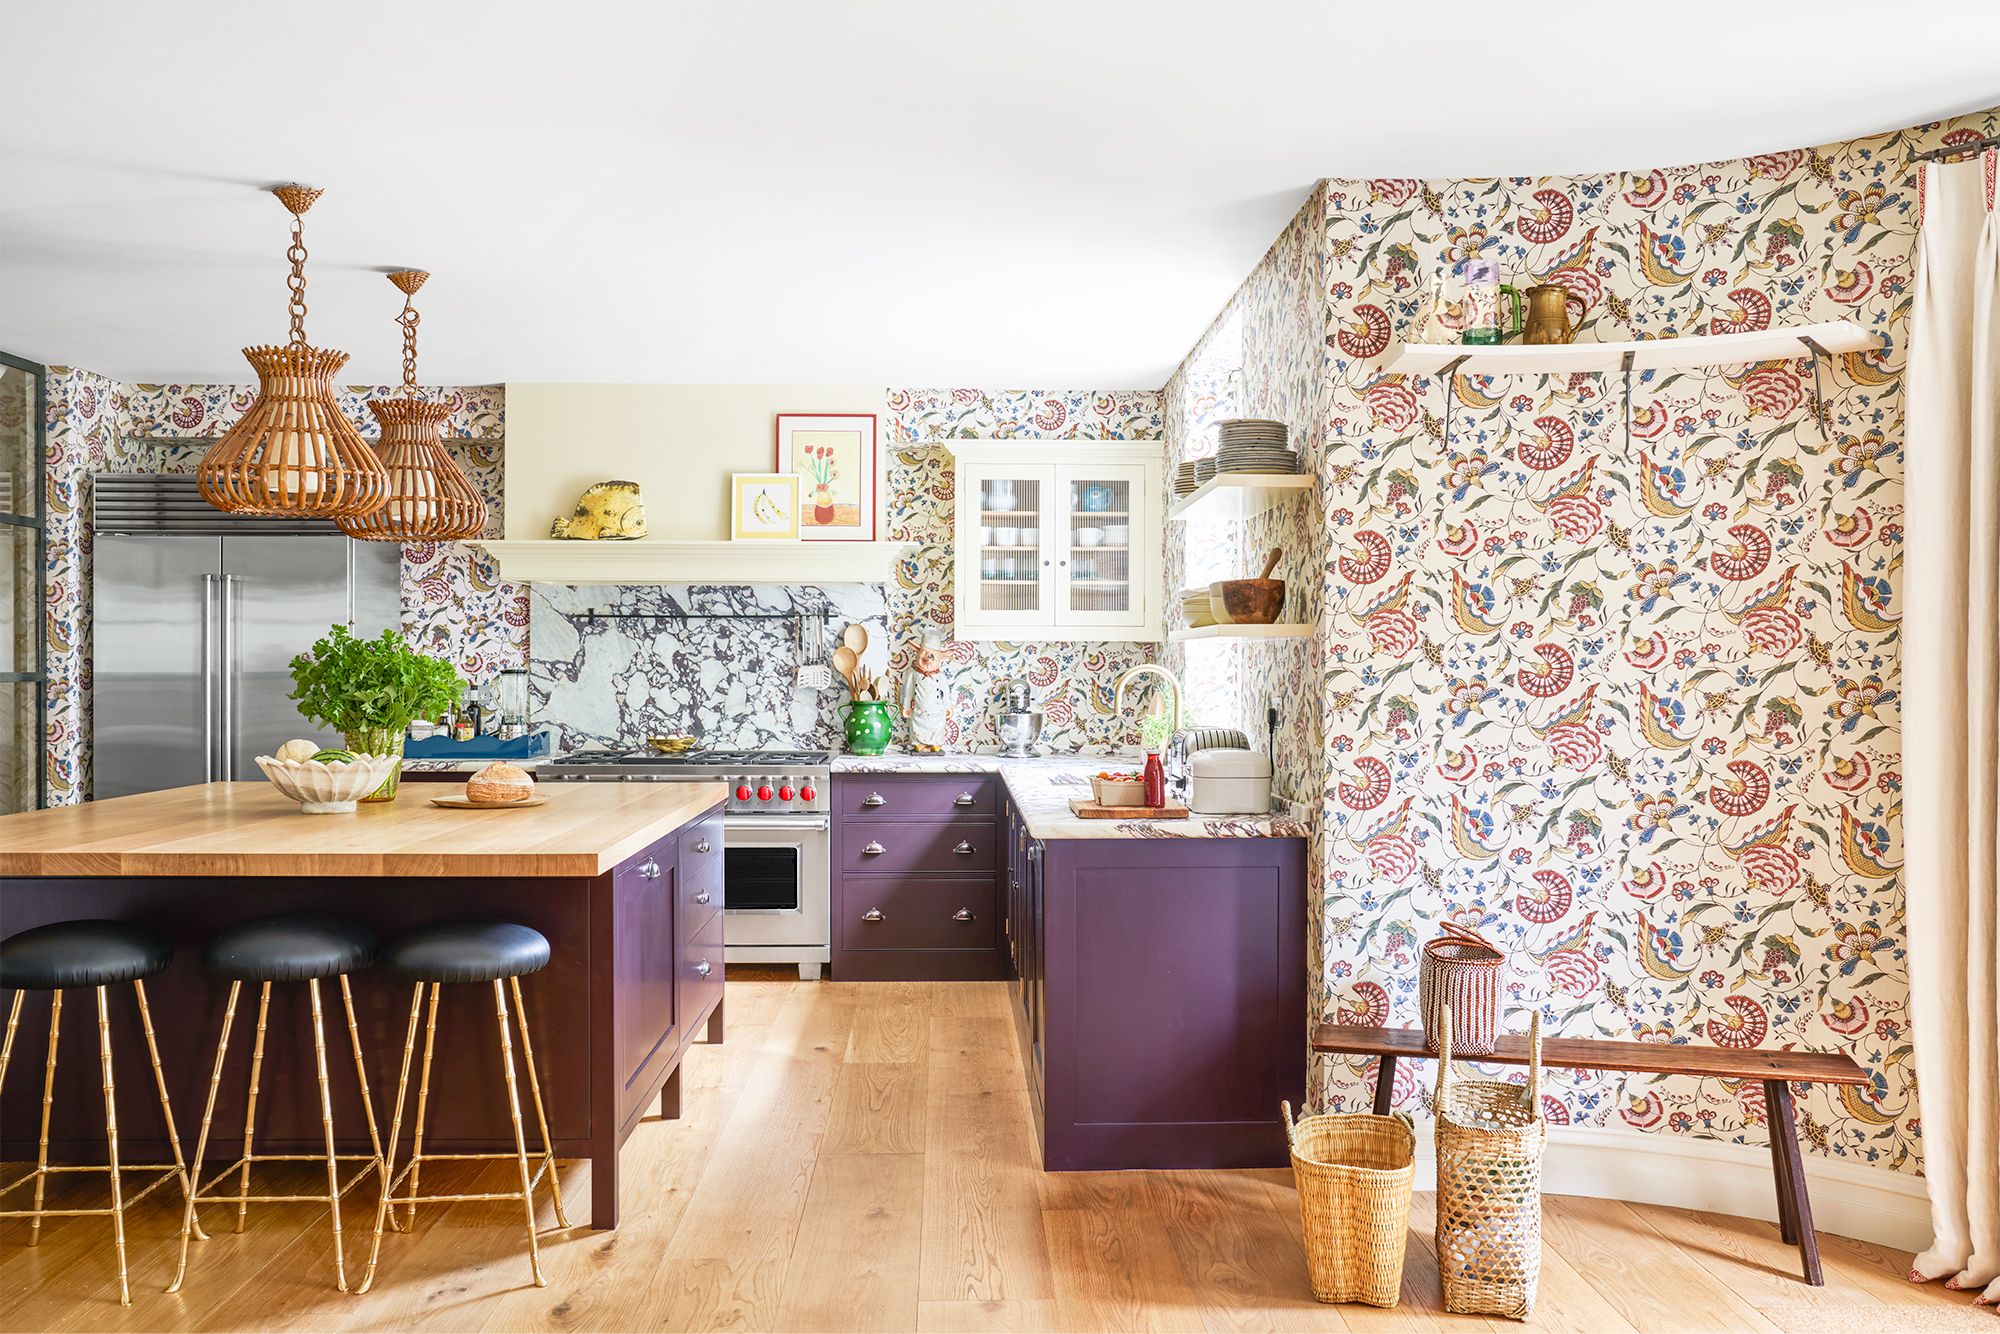 43 Best Kitchen Paint Colors Ideas, Popular Paint Colors Kitchen Cabinets